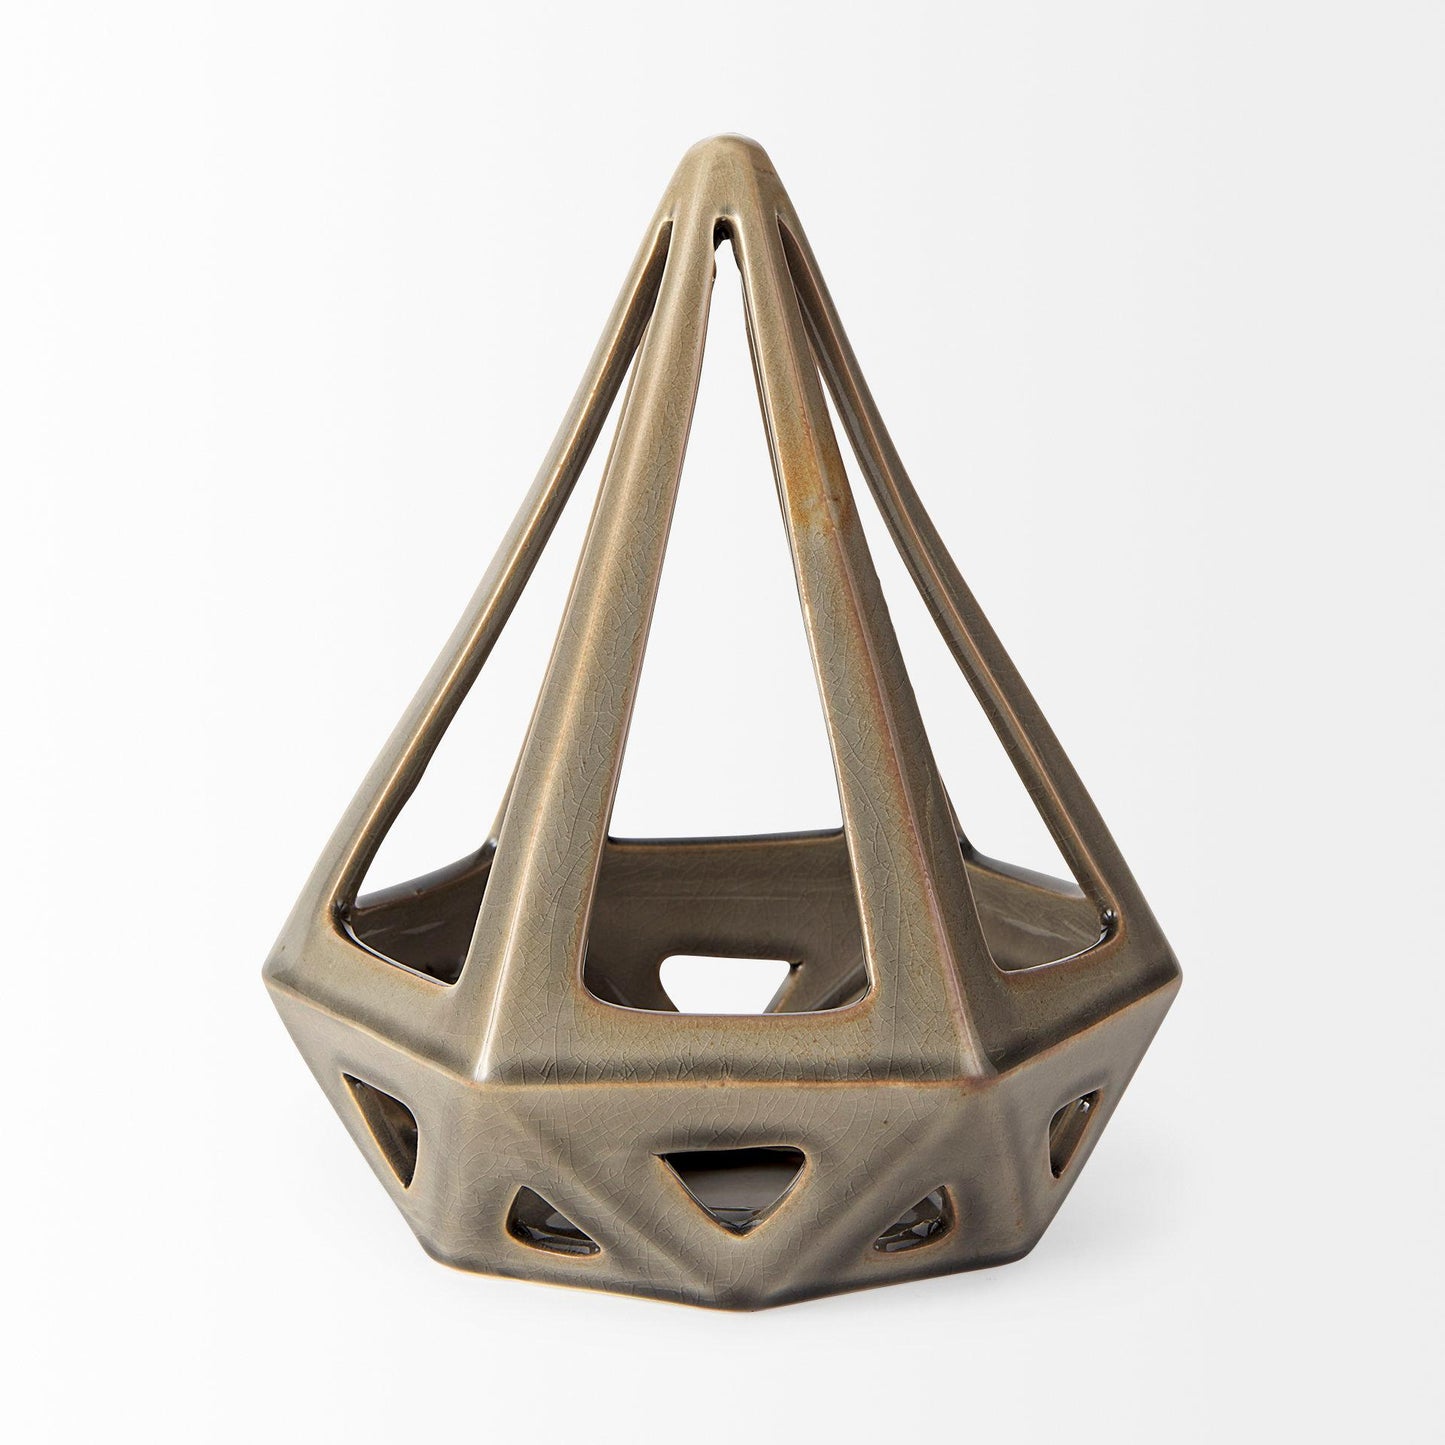 Hood 7.7L x 7.7W x 9.4H Bronze Geometric Ceramic Object